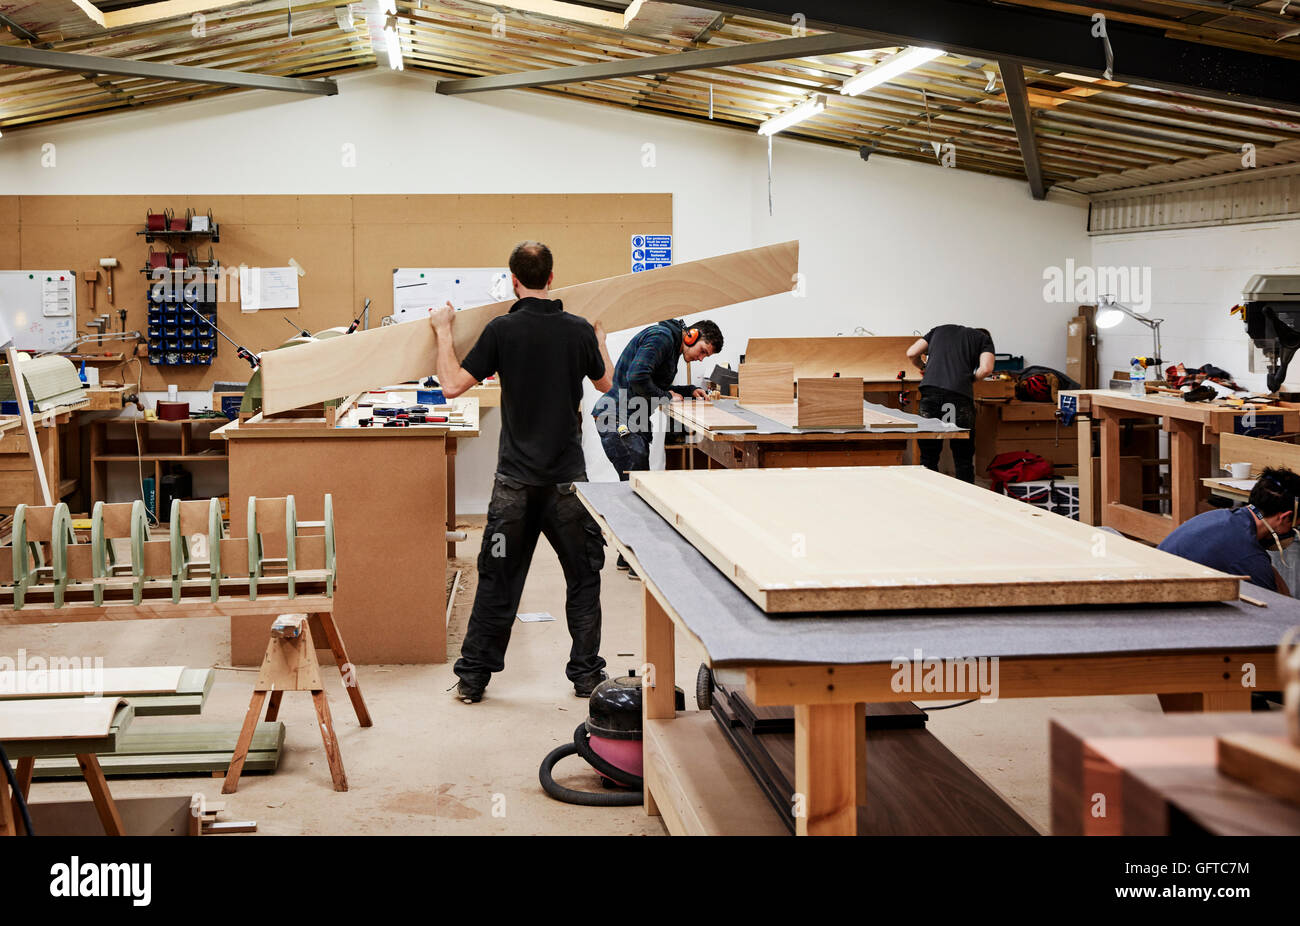 Ein Workshop Möbelbau maßgeschneiderte zeitgenössische Möbel mit traditionellen Fertigkeiten zwei Männer arbeiten mit Holz Stockfoto